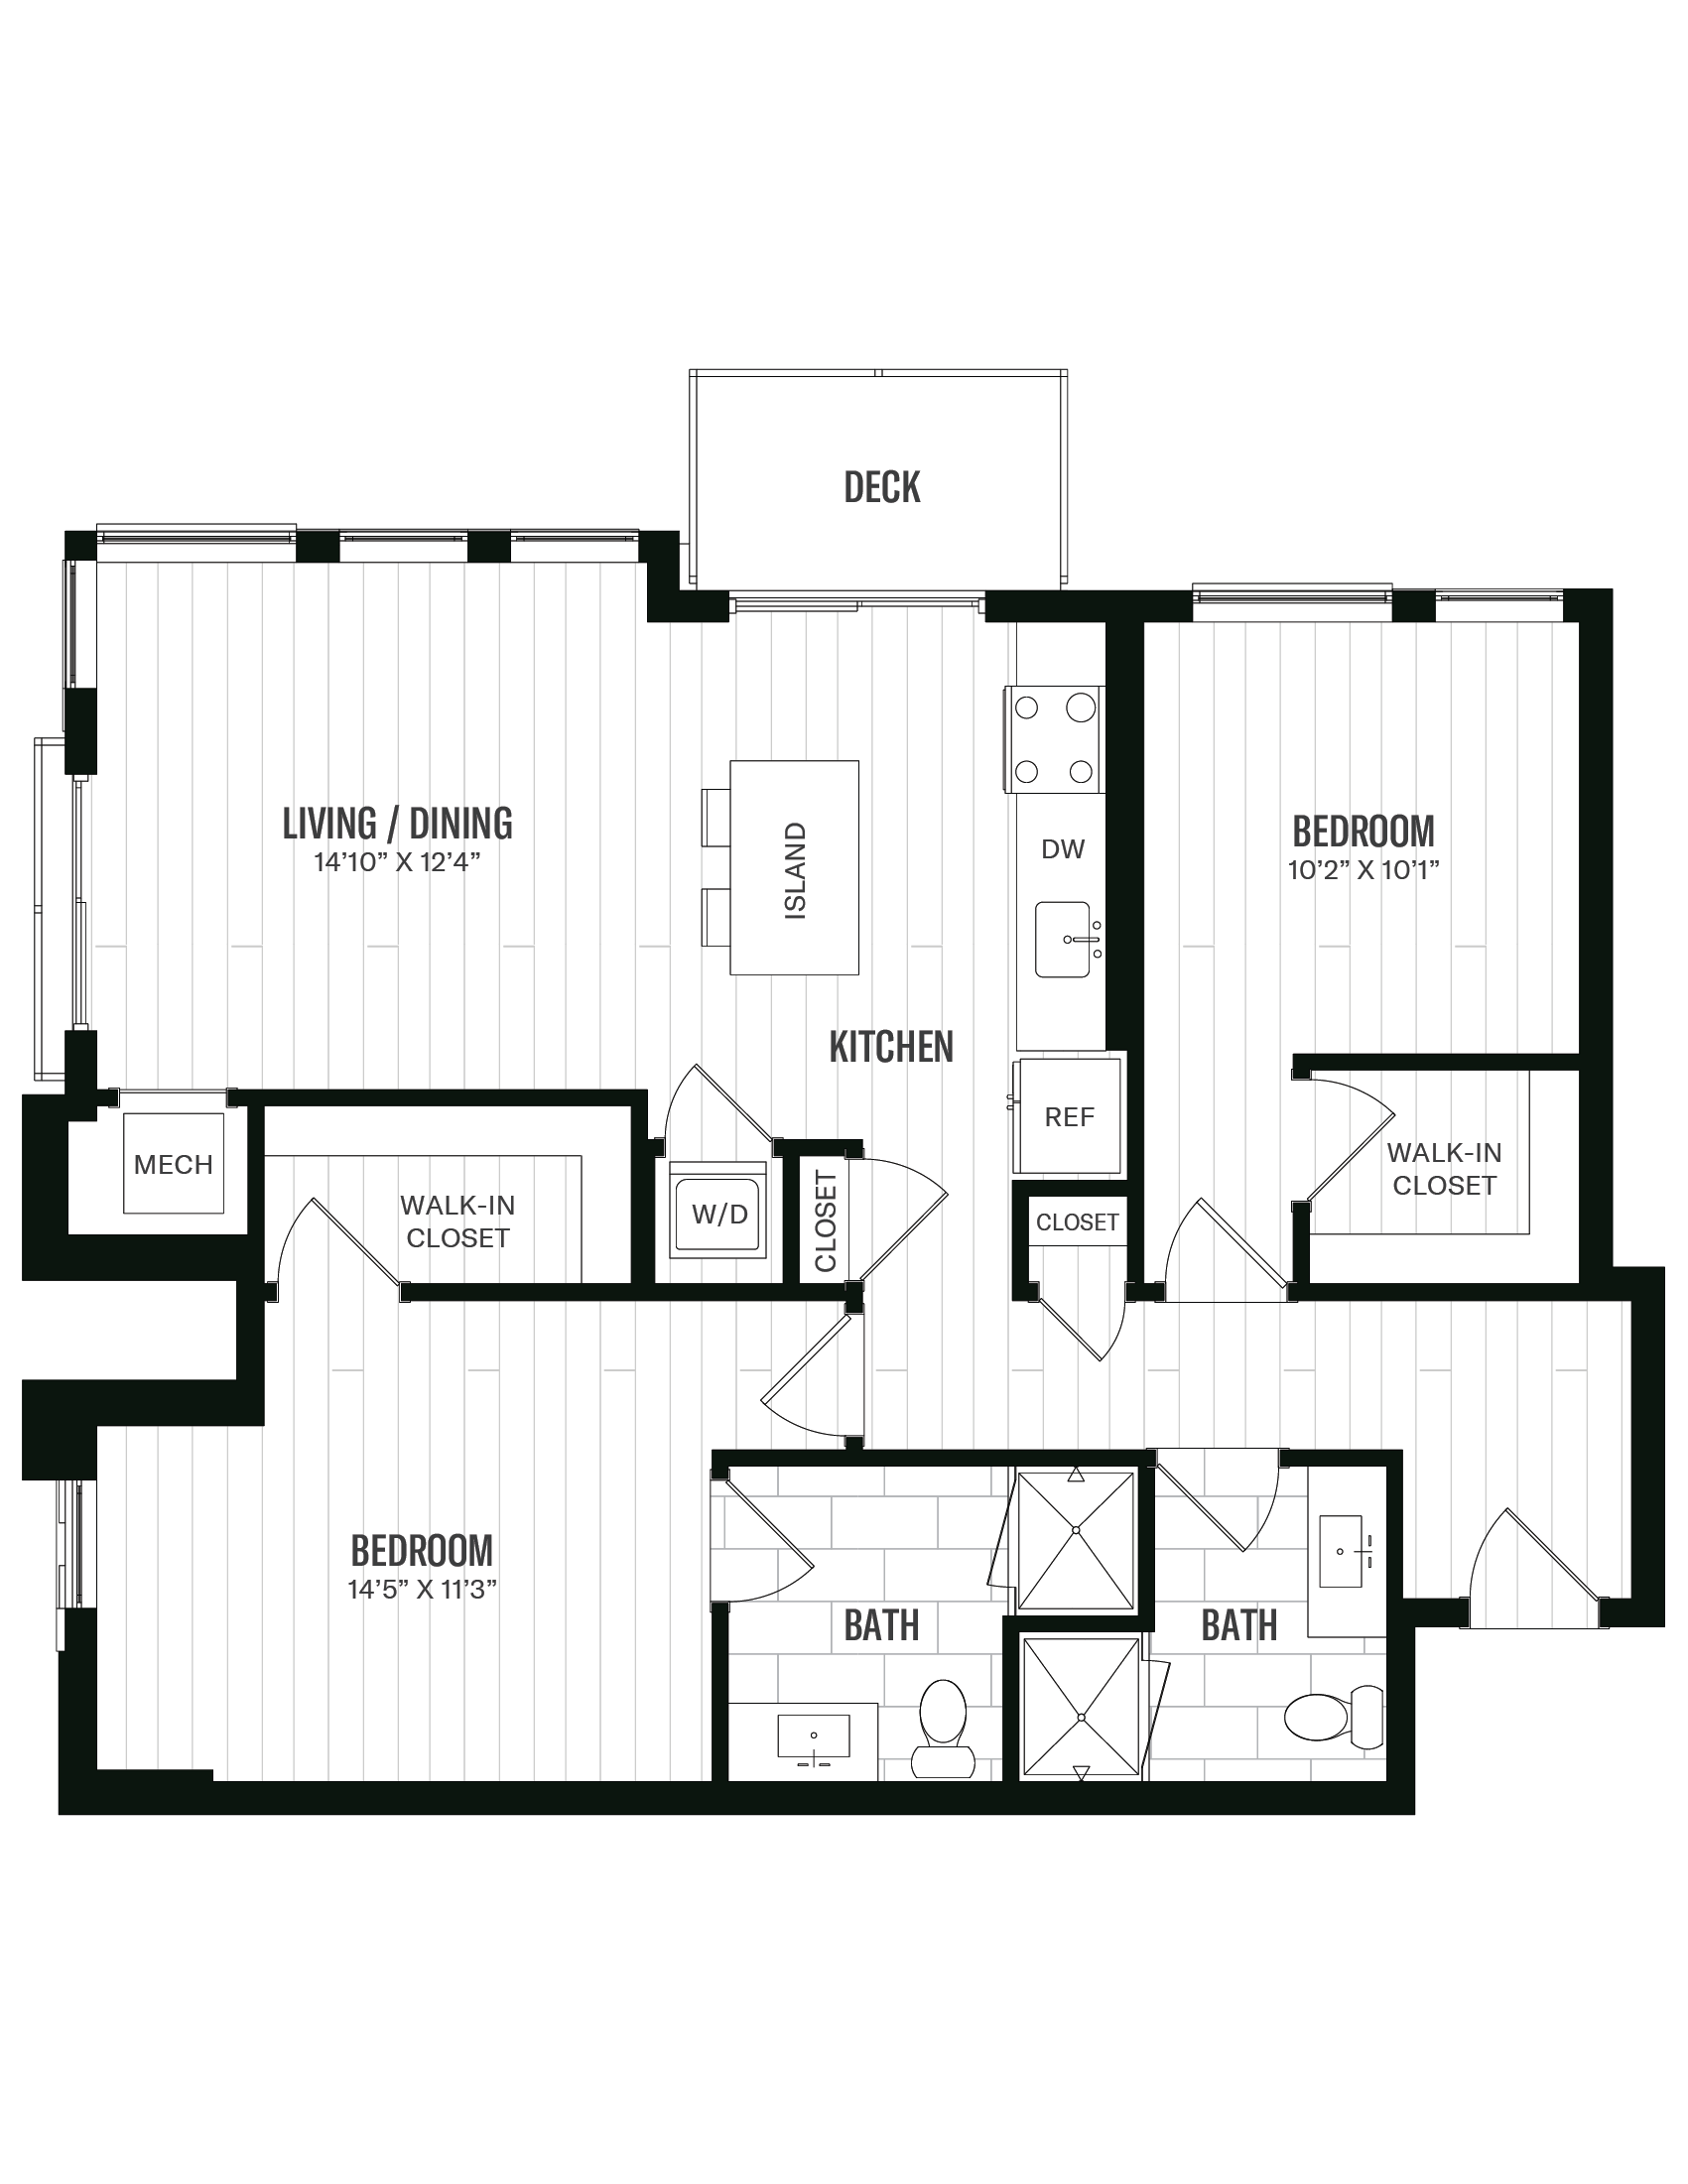 Floorplan image of unit 354